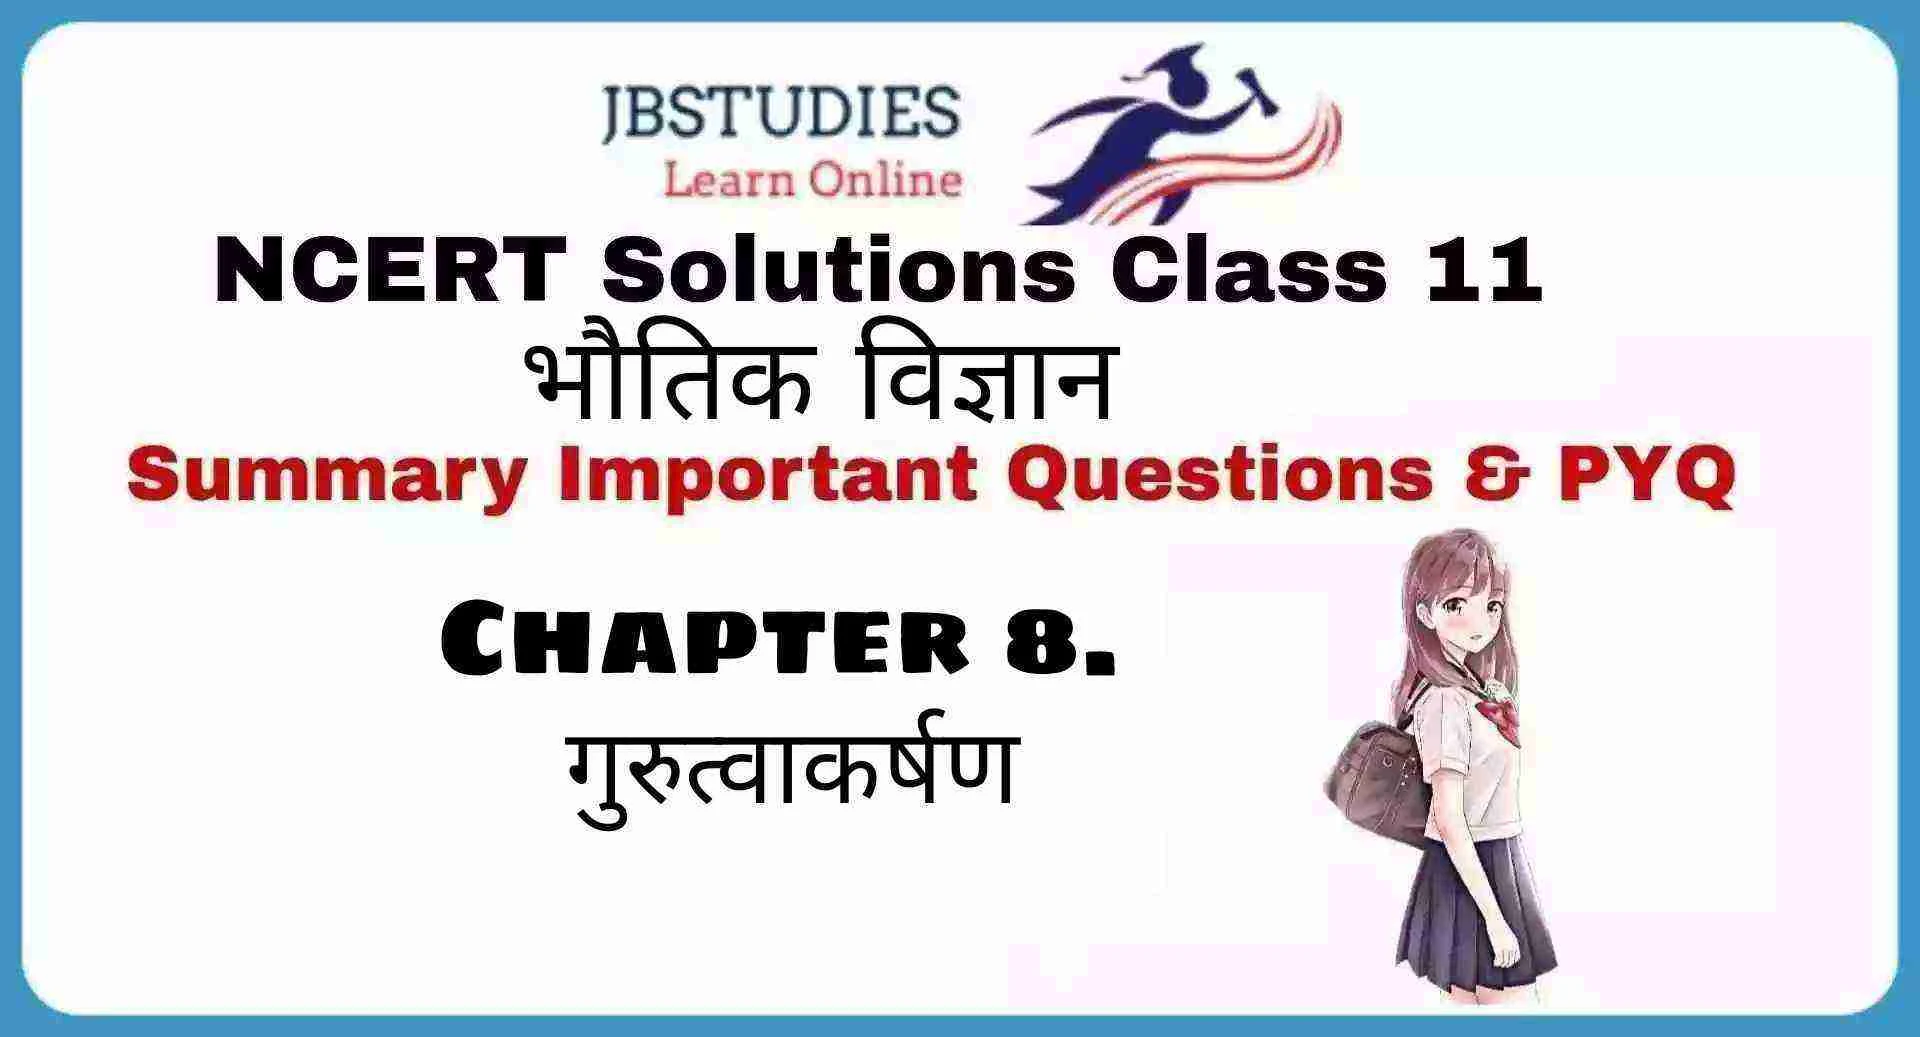 Solutions Class 11 भौतिकी विज्ञान Chapter-8 (गुरुत्वाकर्षण )